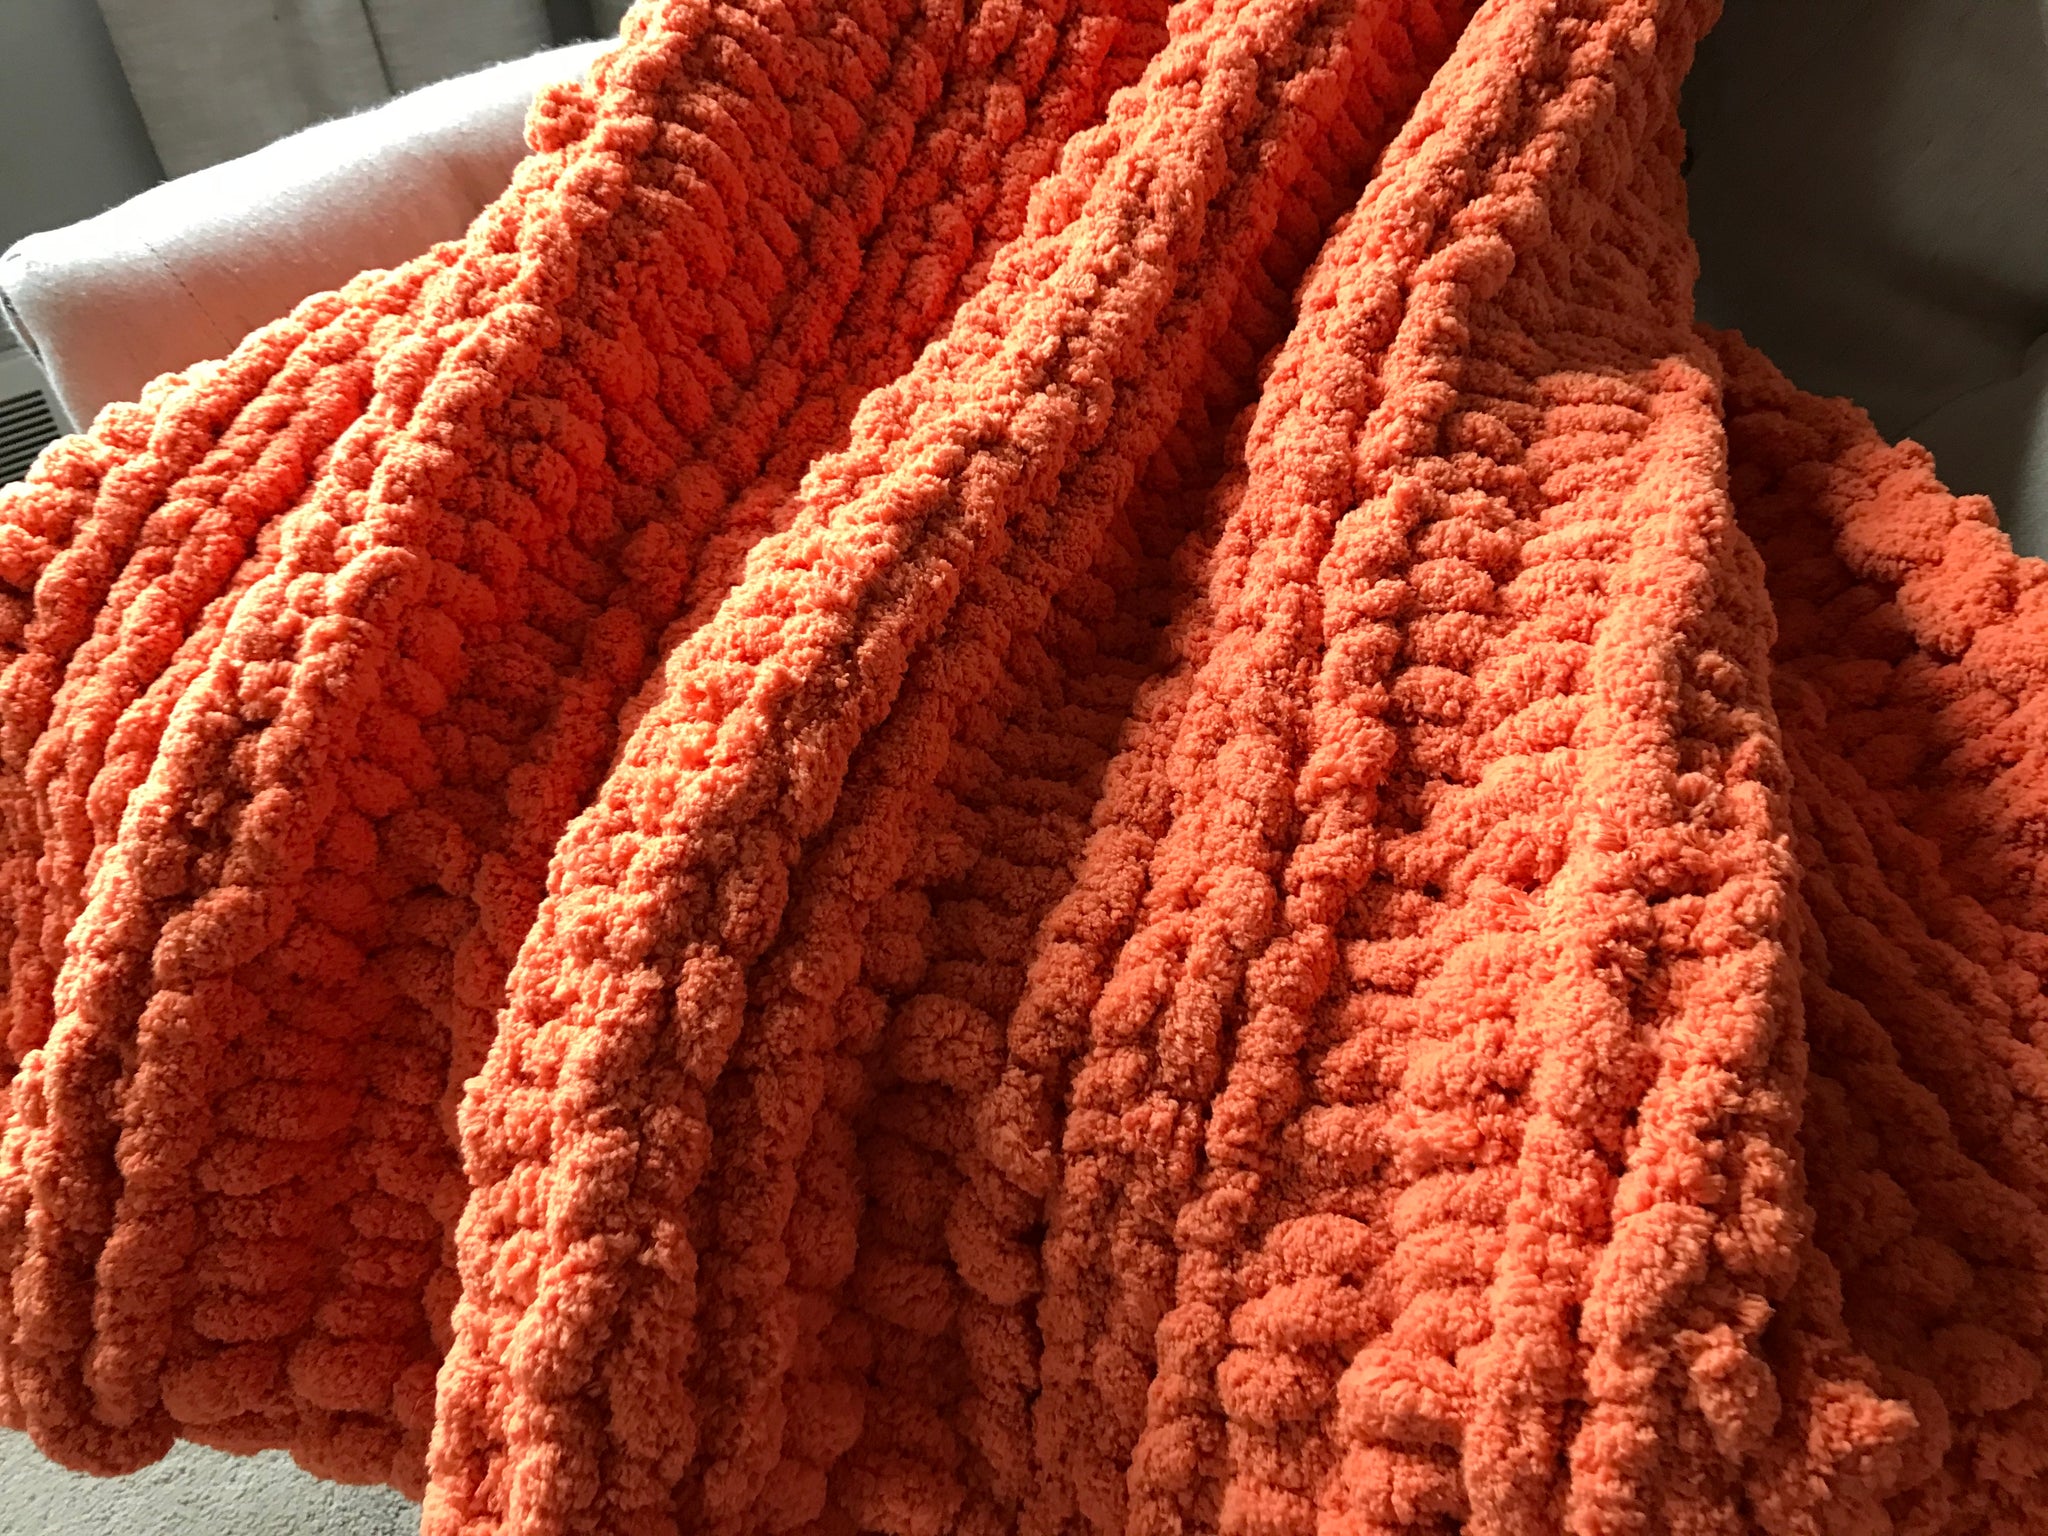 Orange Chunky Knit Blanket – Hands On For Homemade